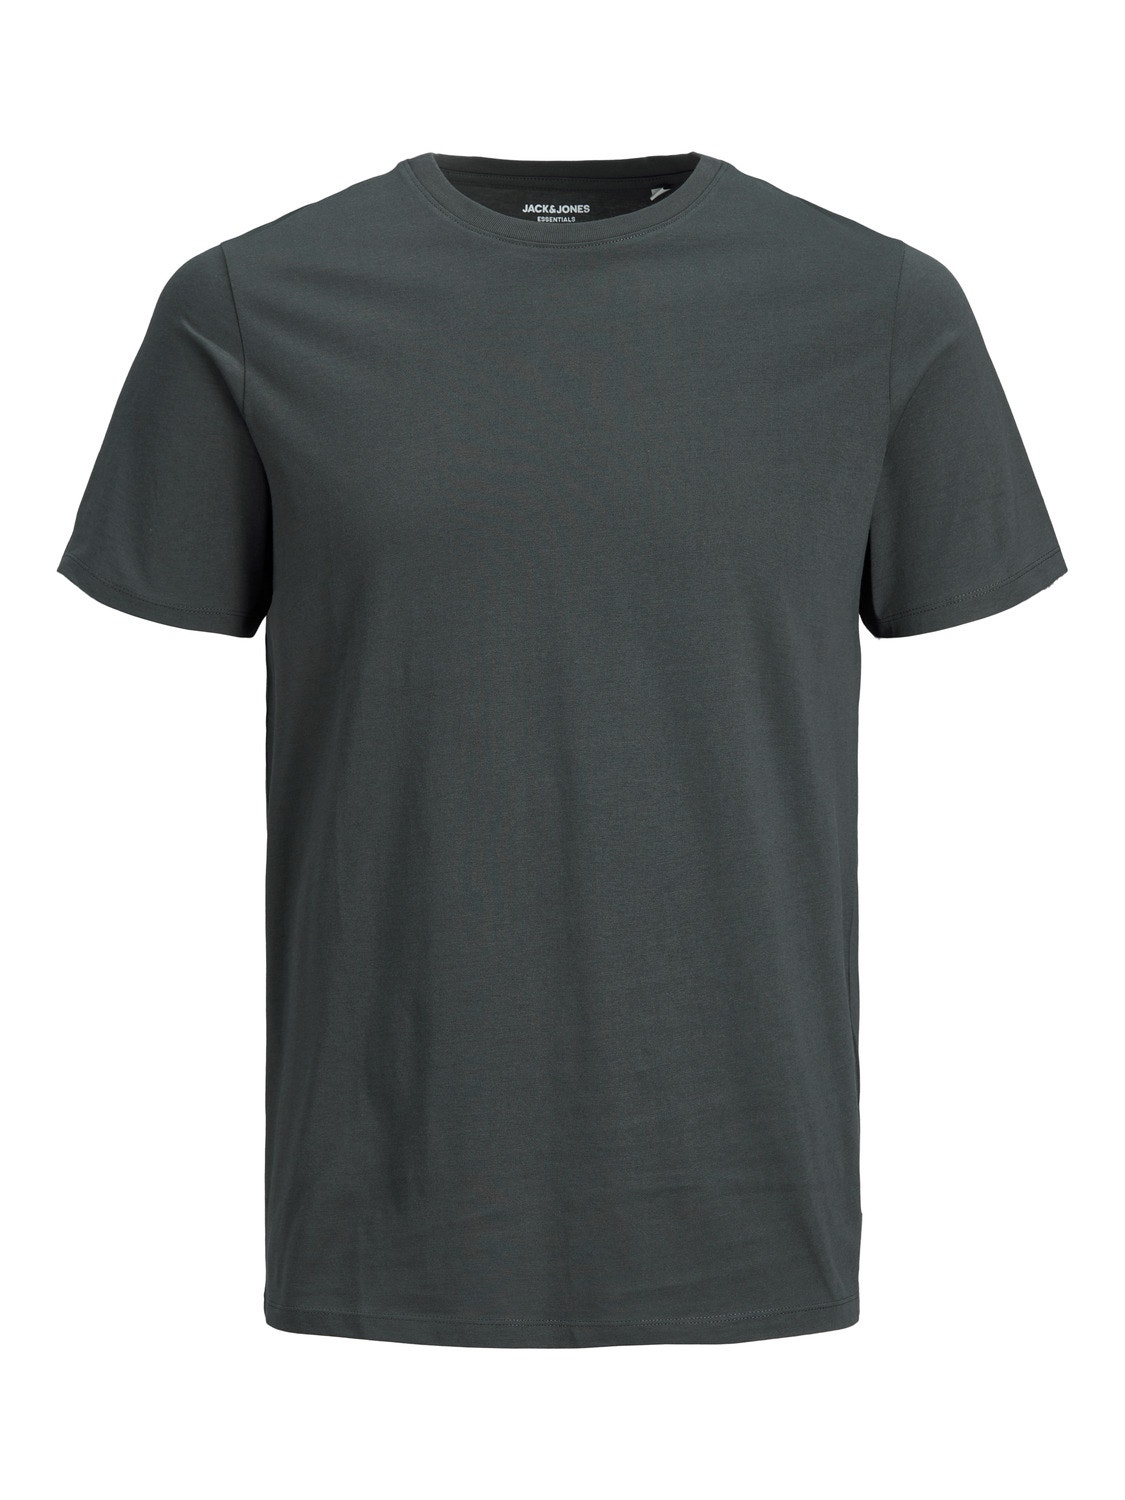 Jack & Jones Standard Fit O-Neck T-Shirt -Asphalt - 12156101